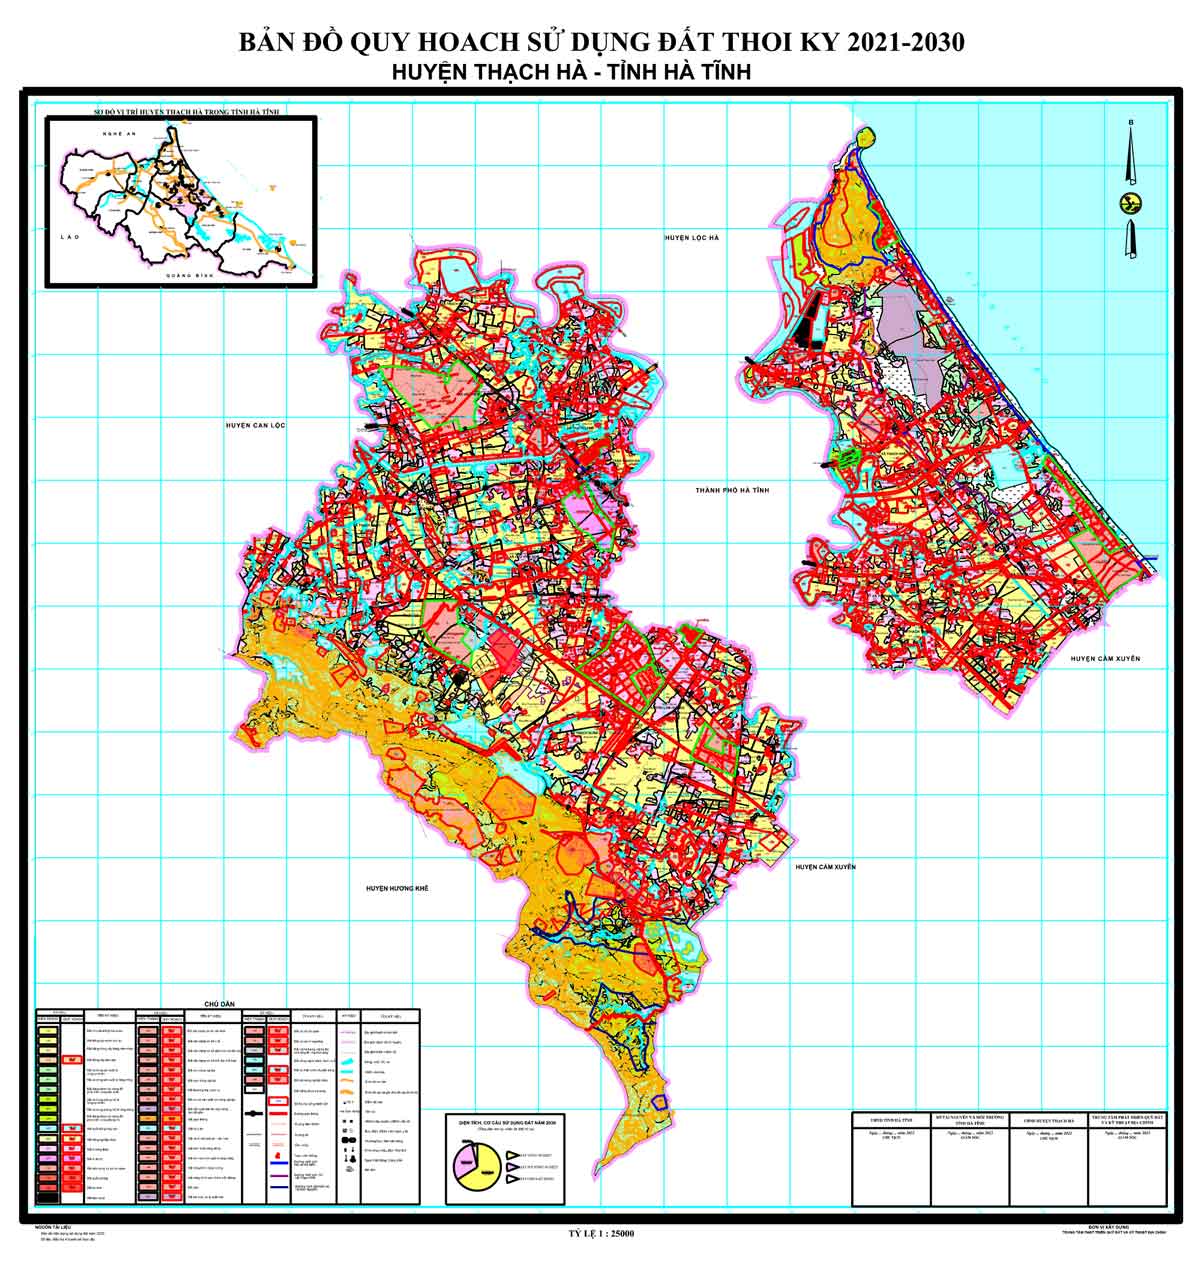 Bản đồ QHSDĐ huyện Thạch Hà đến năm 2030